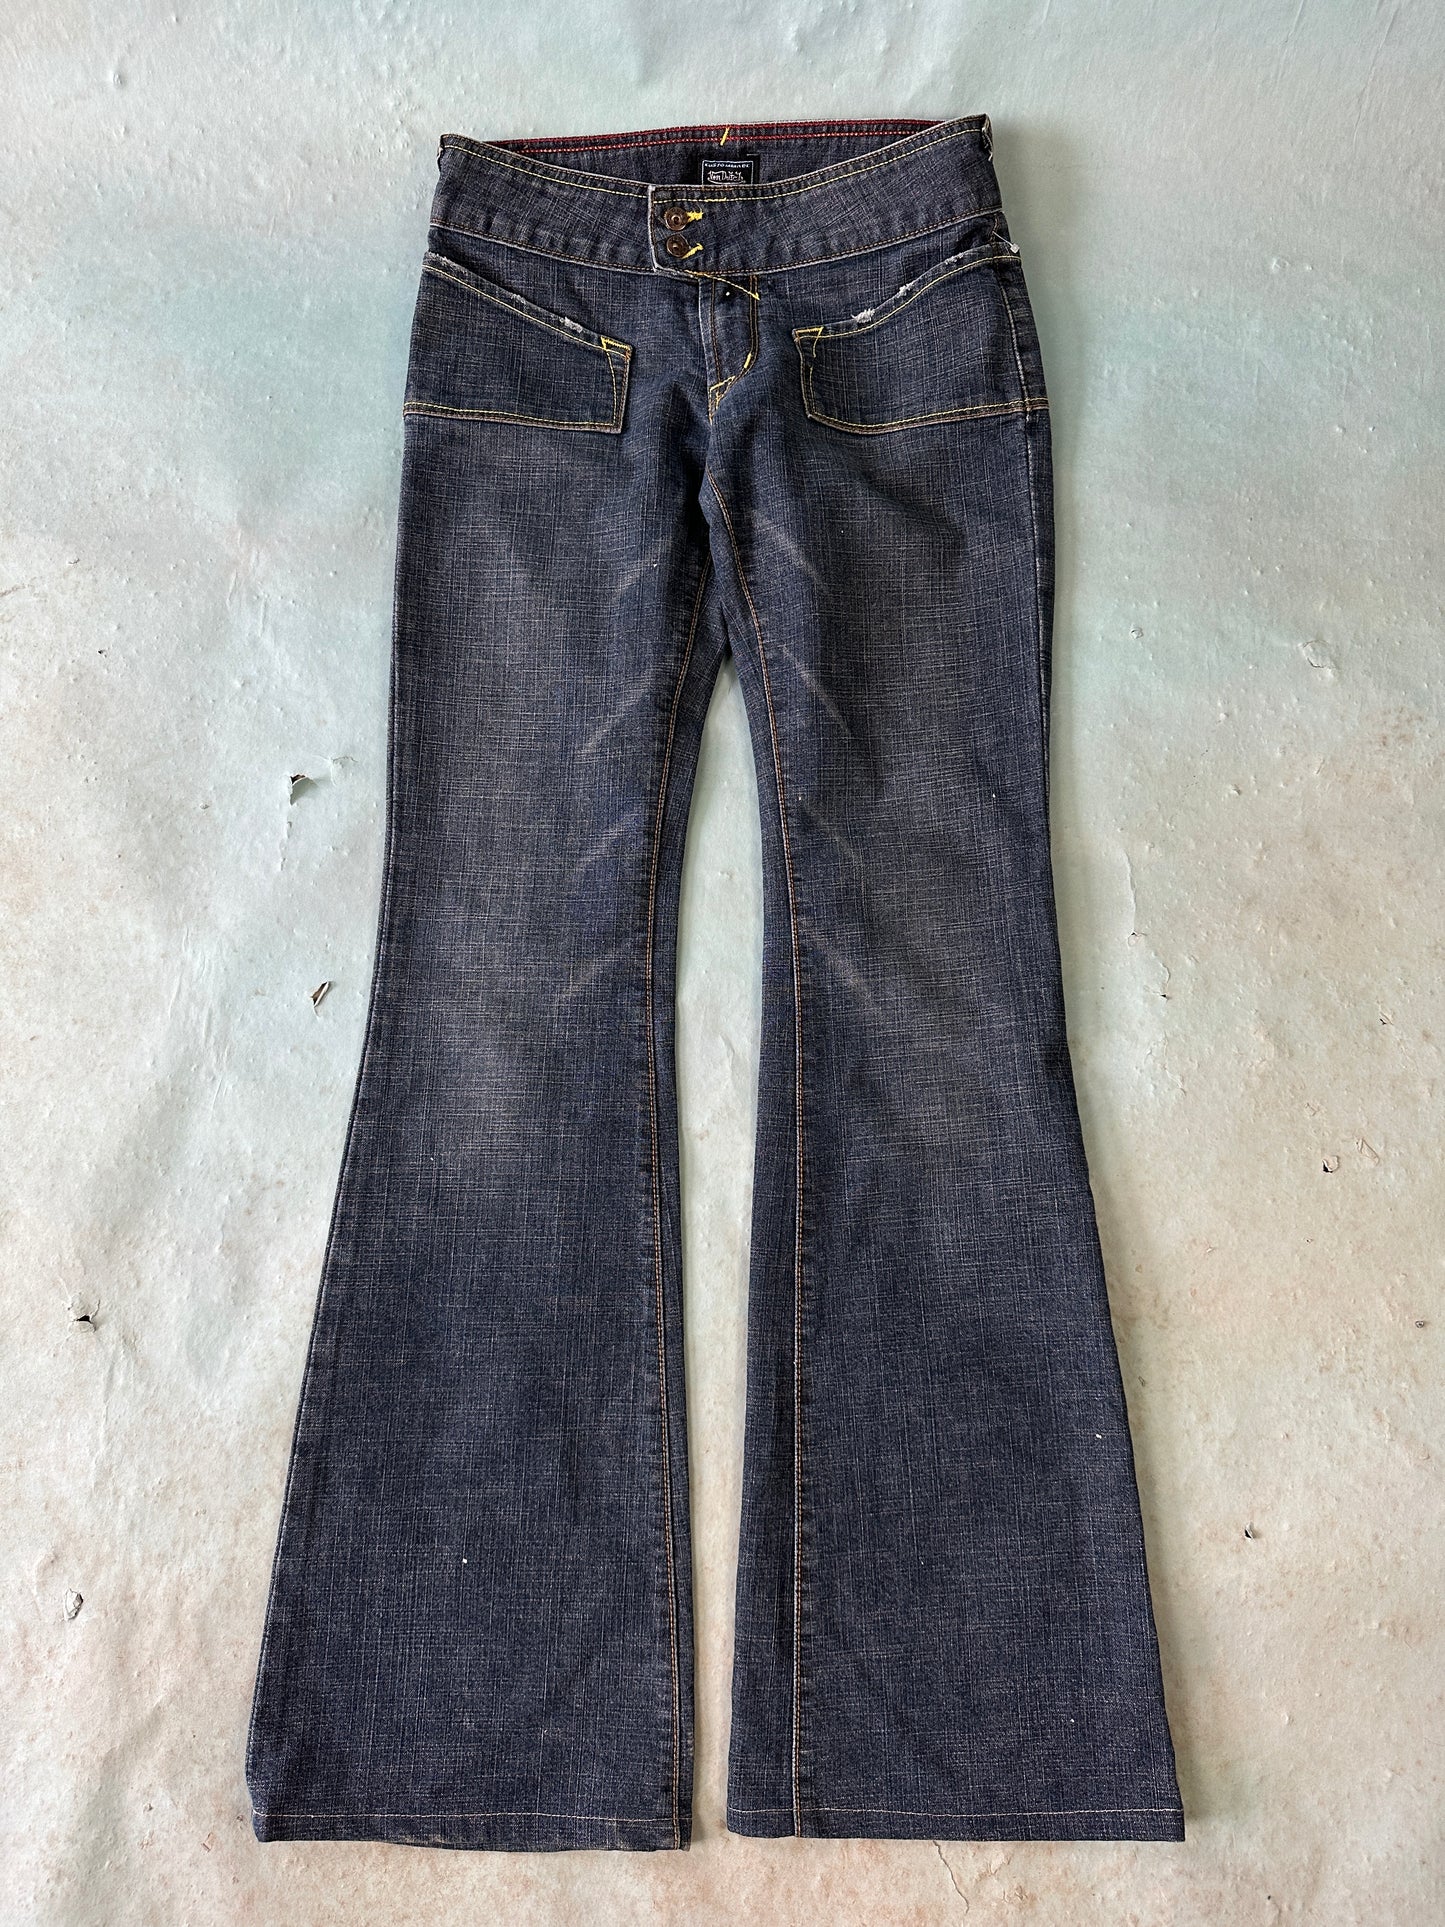 Von Dutch Flair Vintage Jeans - 25